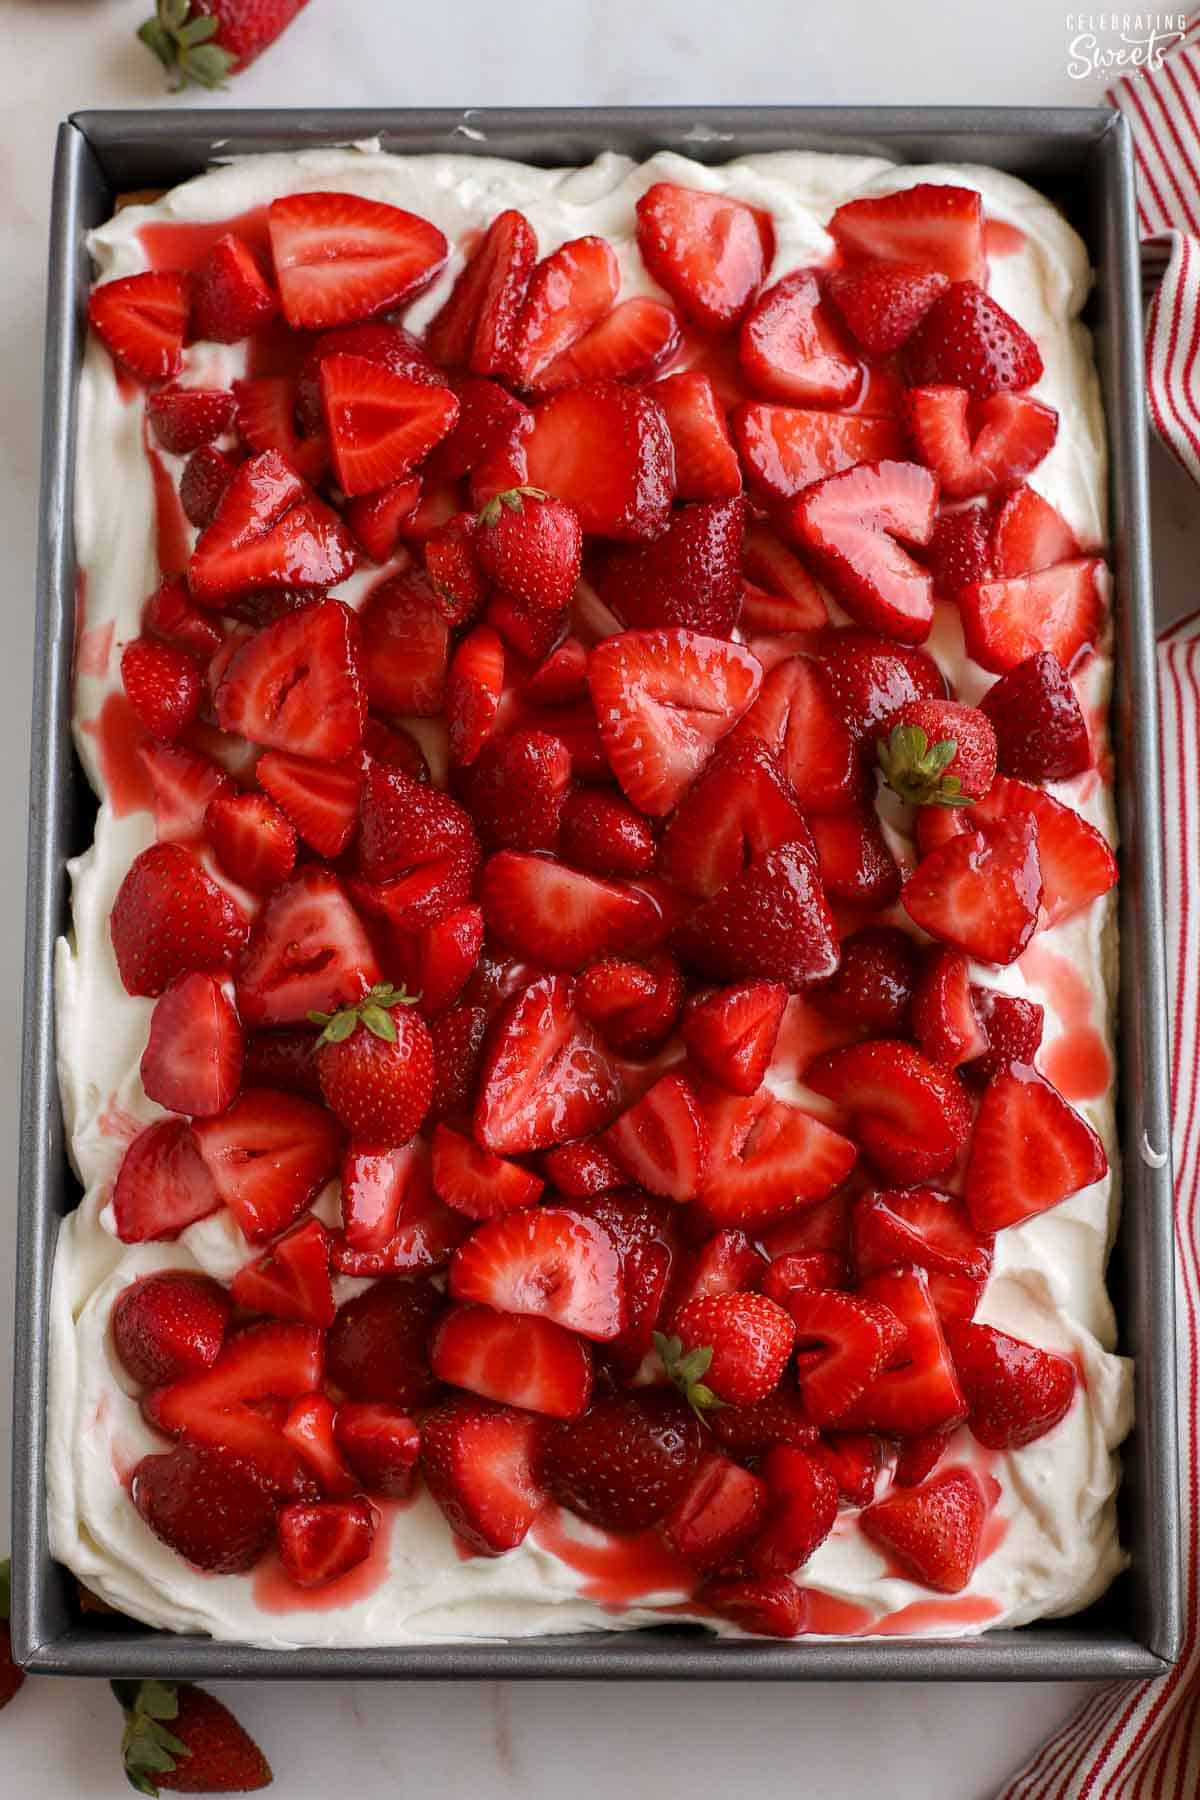 Strawberry sheet cake in a metal baking pan.